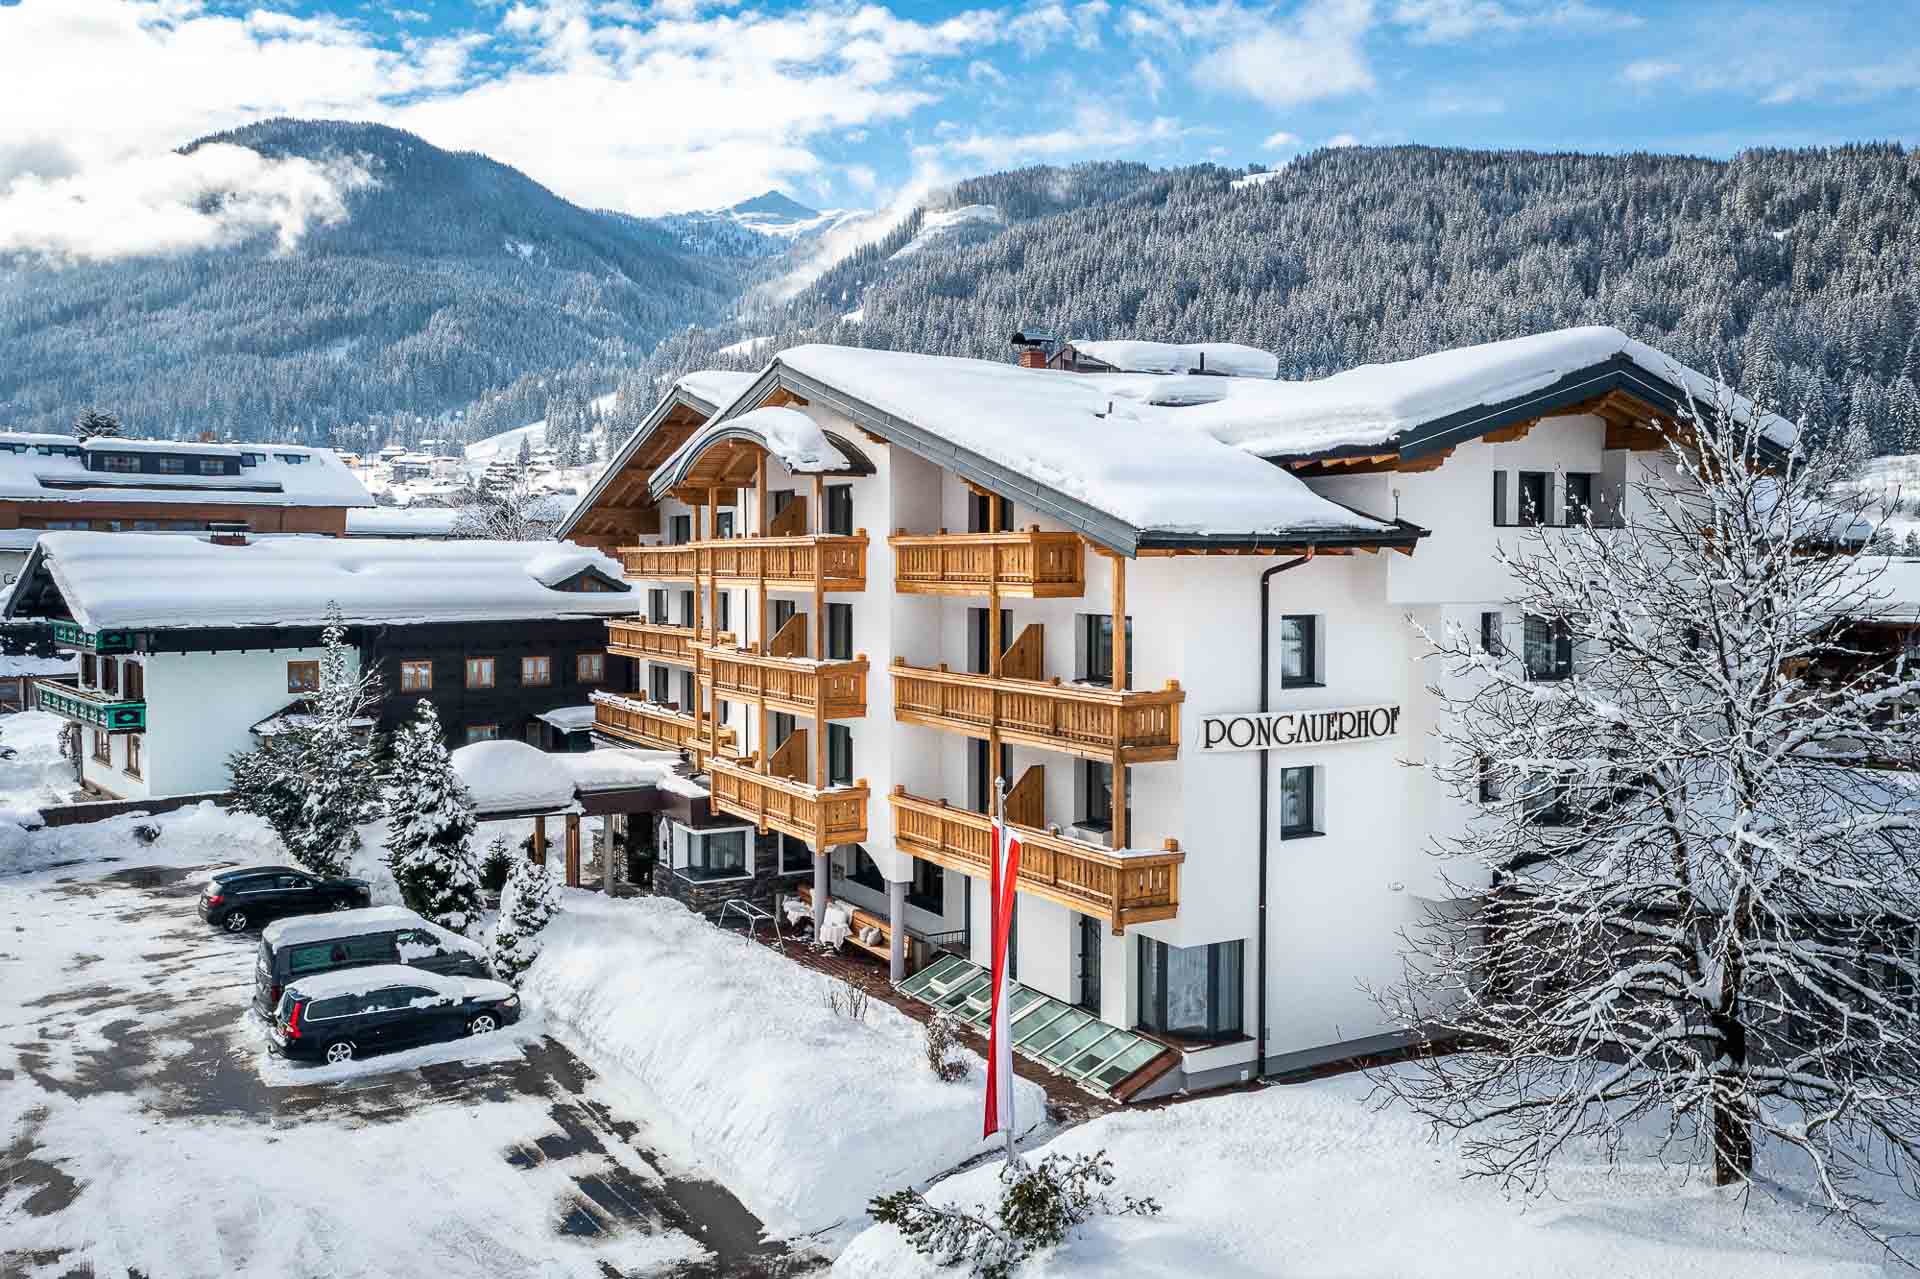 Hotel Pongauerhof in Flachau in winter